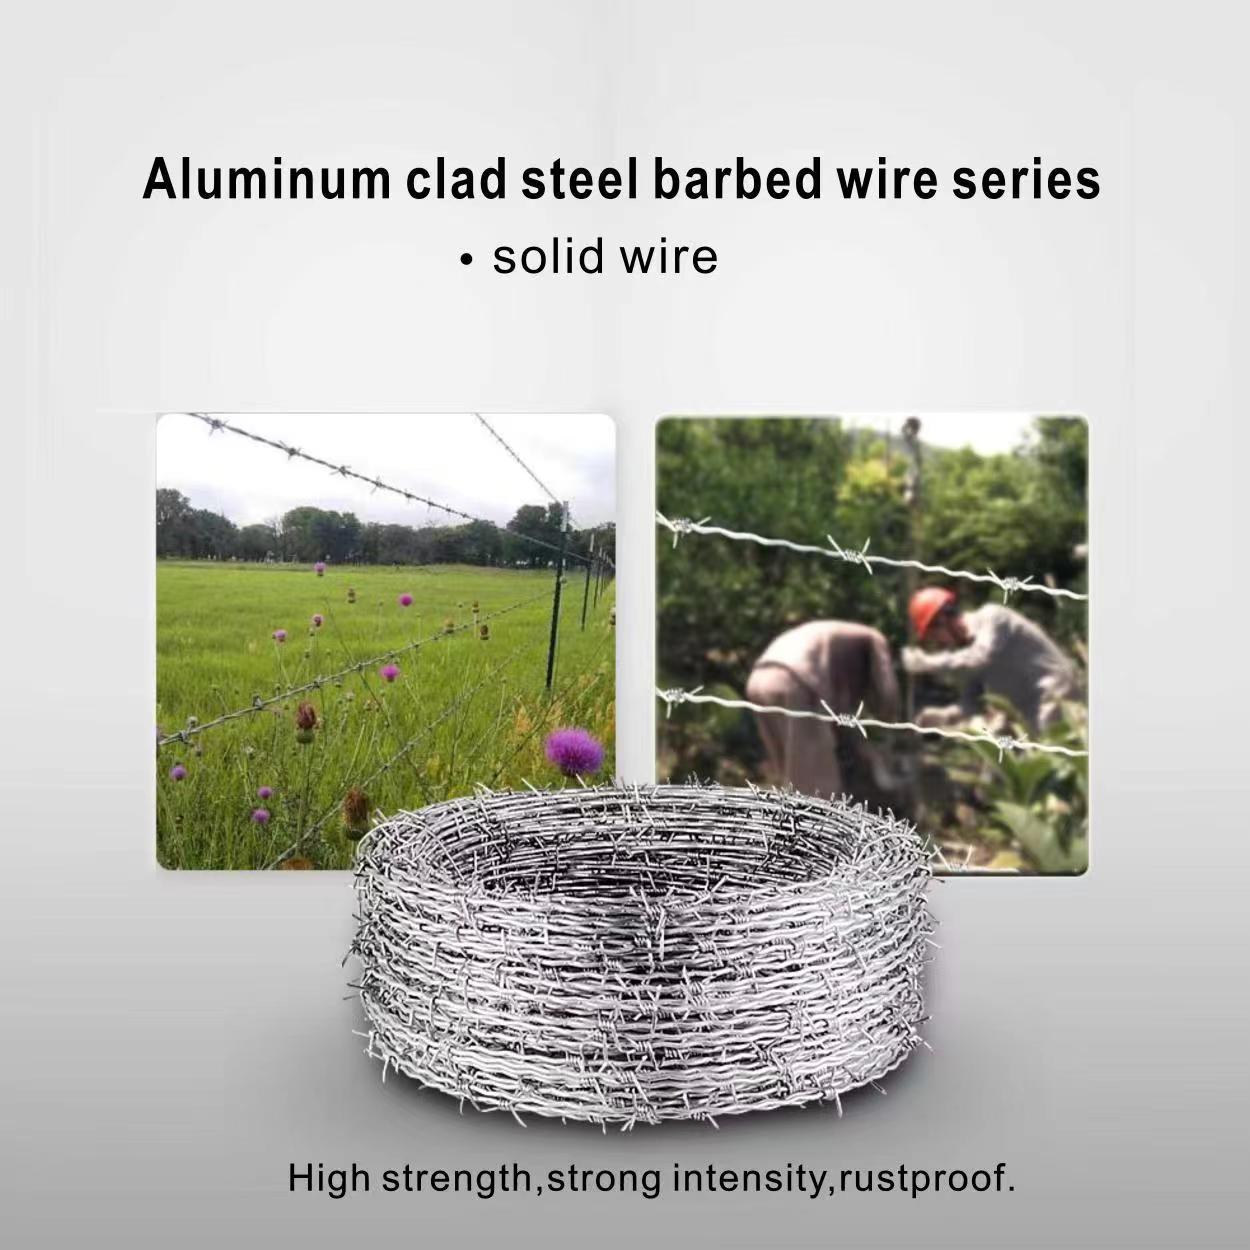 Aluminum clad steel razor wire